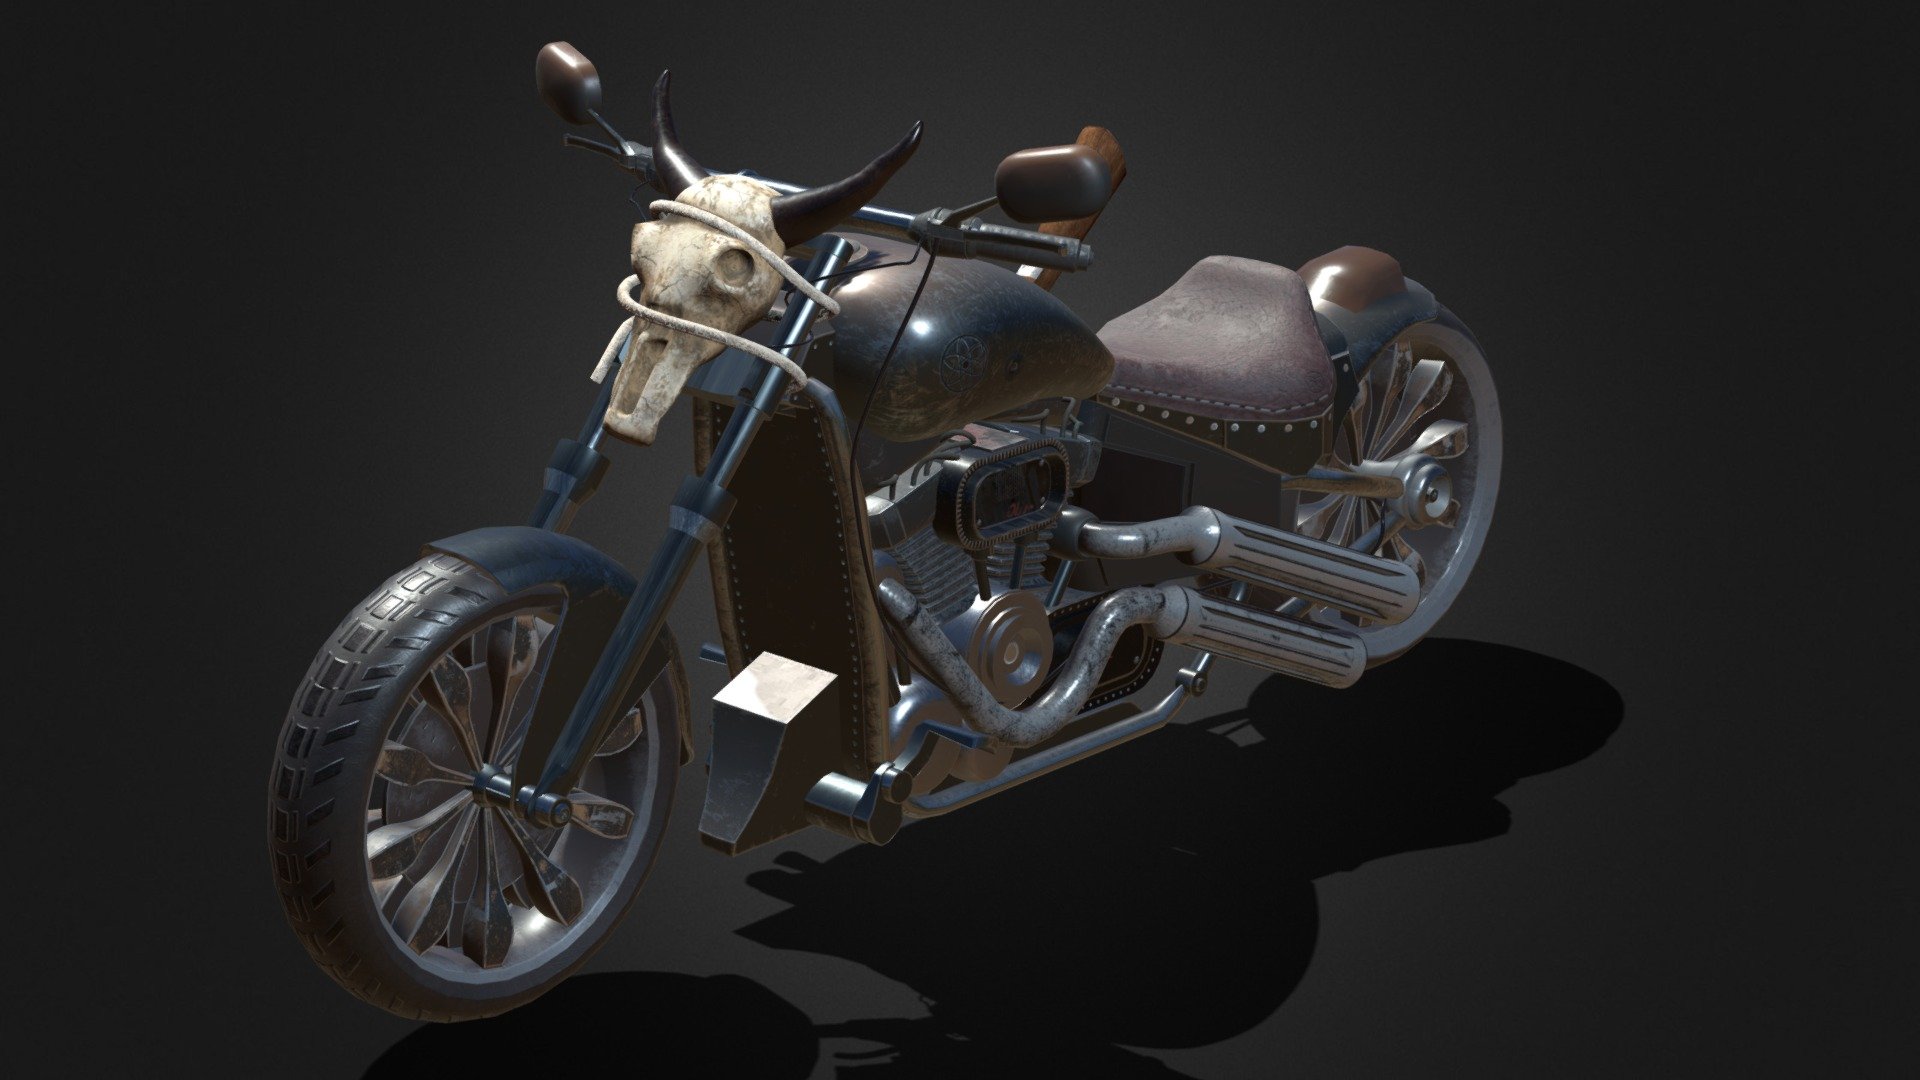 My Firt 3d Model in sketchfab - Old West Bike - Download Free 3D model by OzerGokmen 3d model